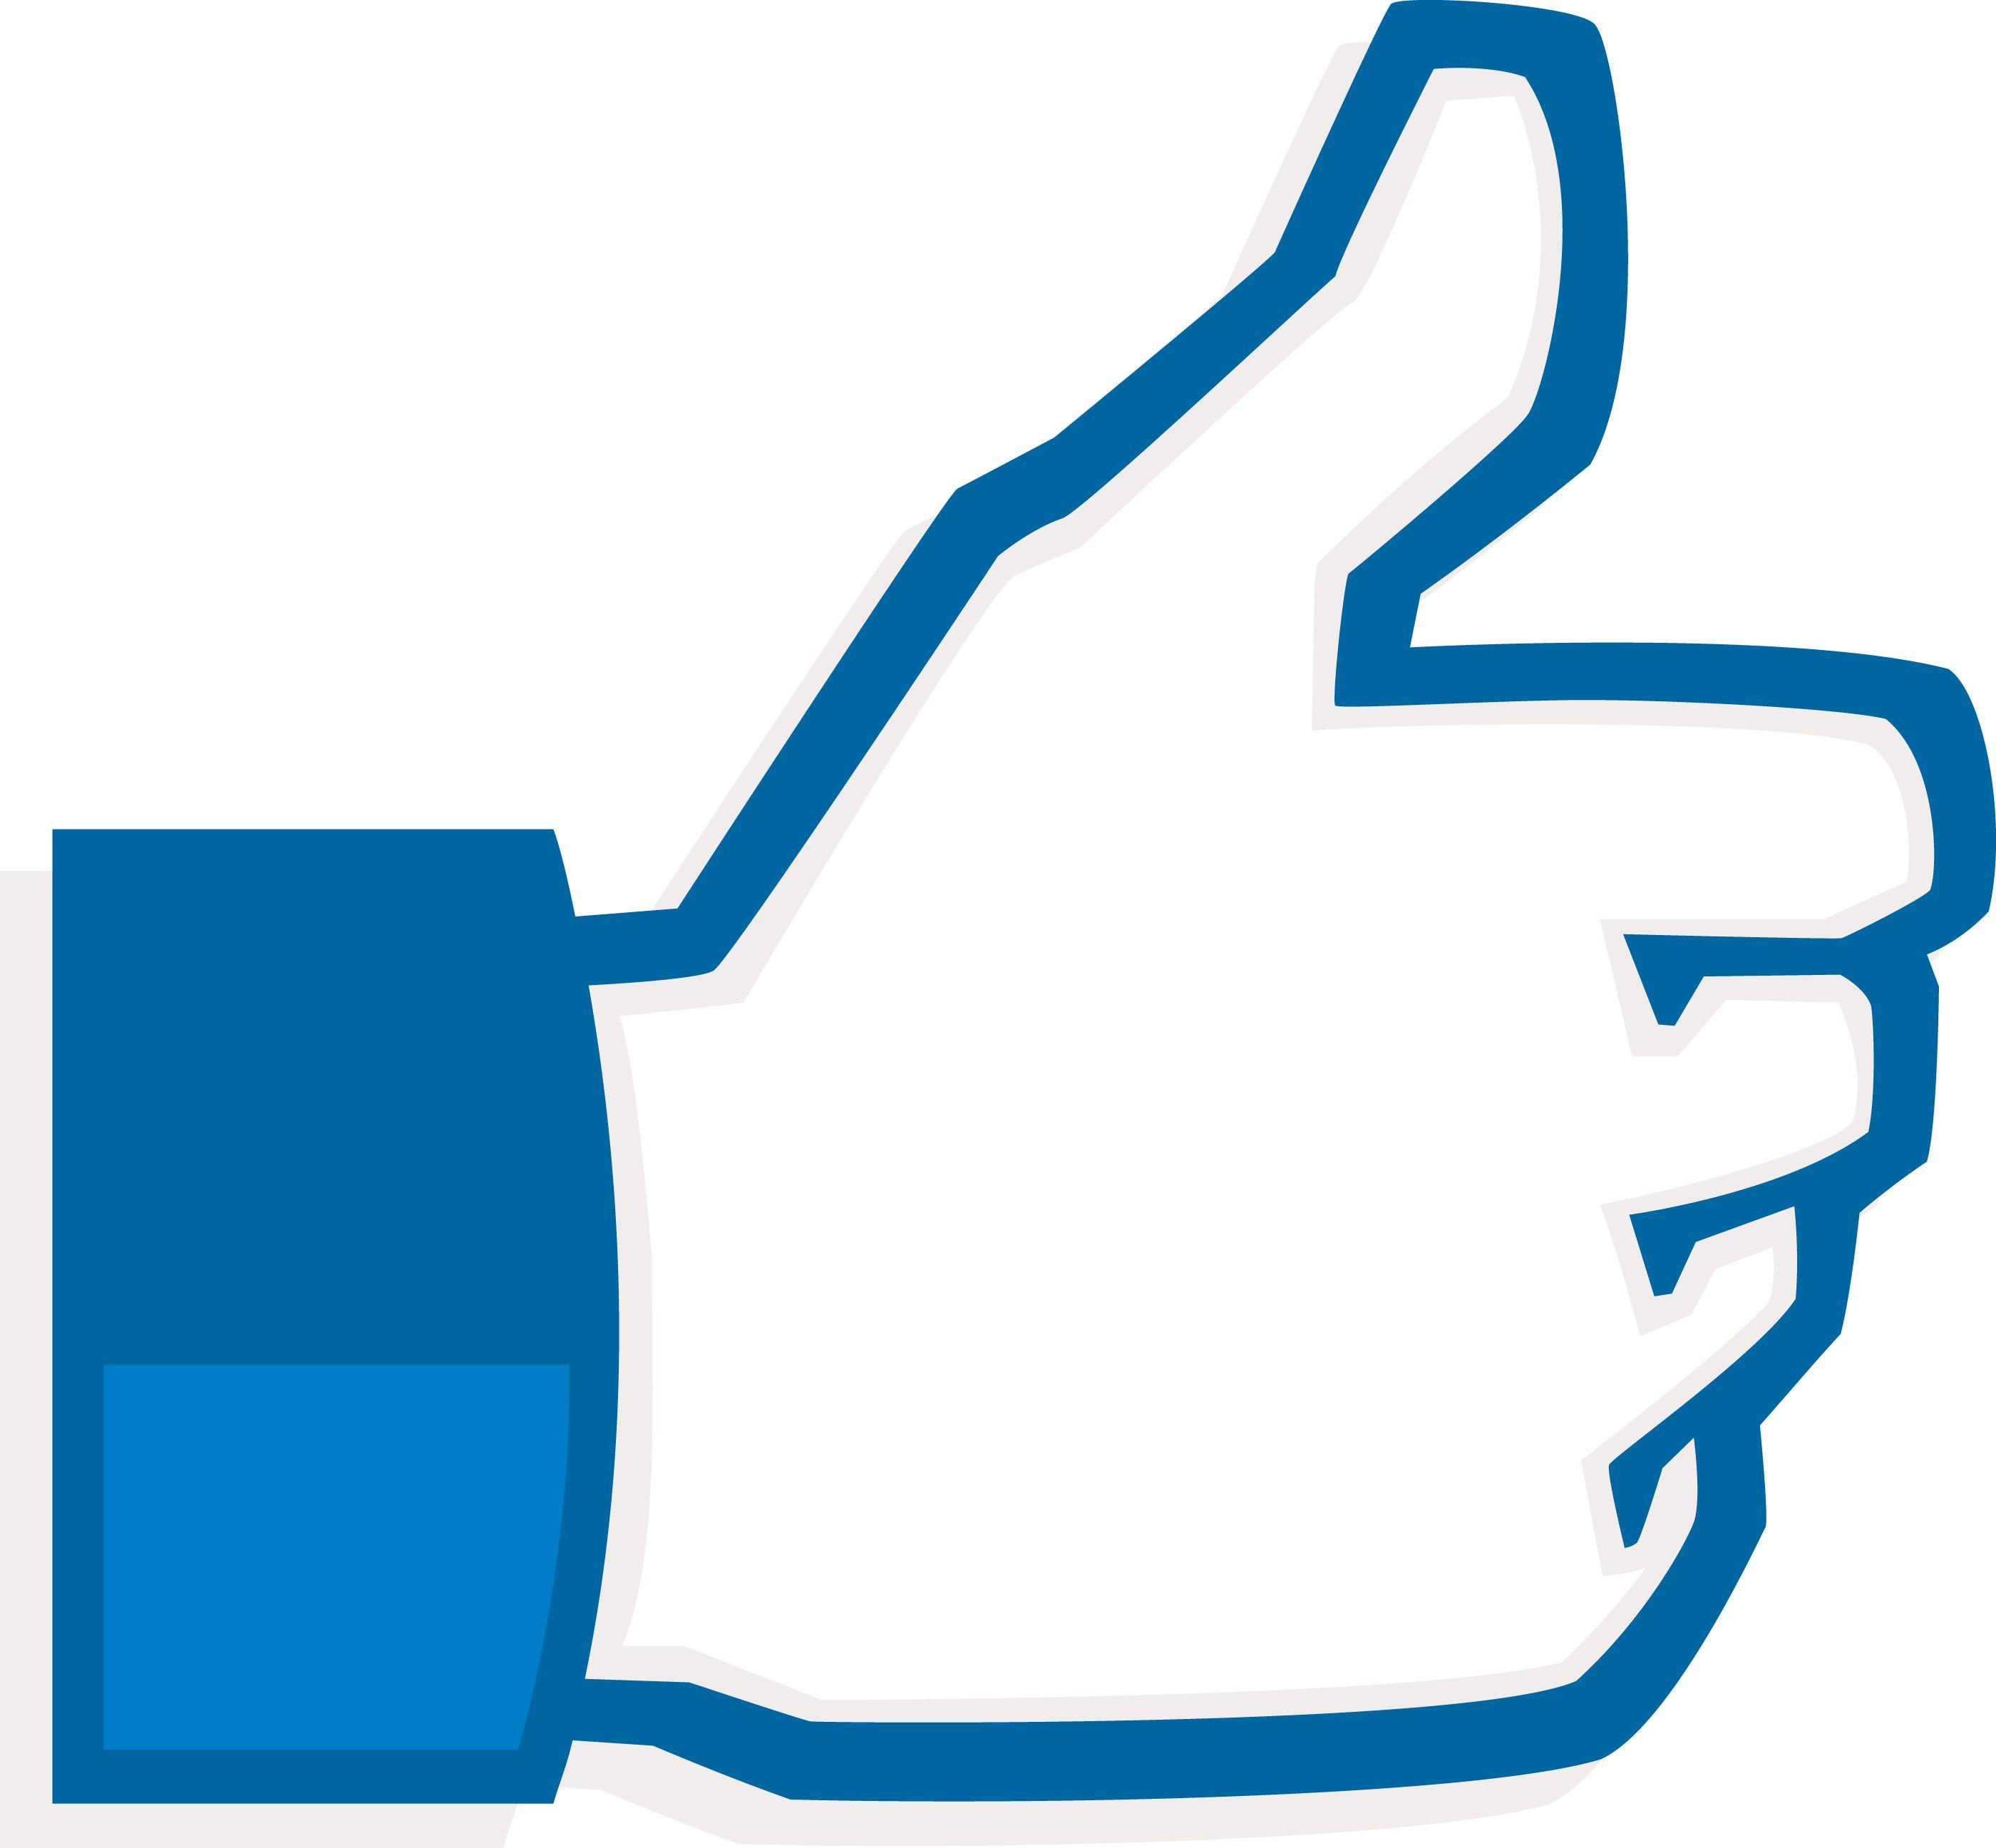 Facebook Thumb Logo - Vector library library facebook dislike logo - RR collections